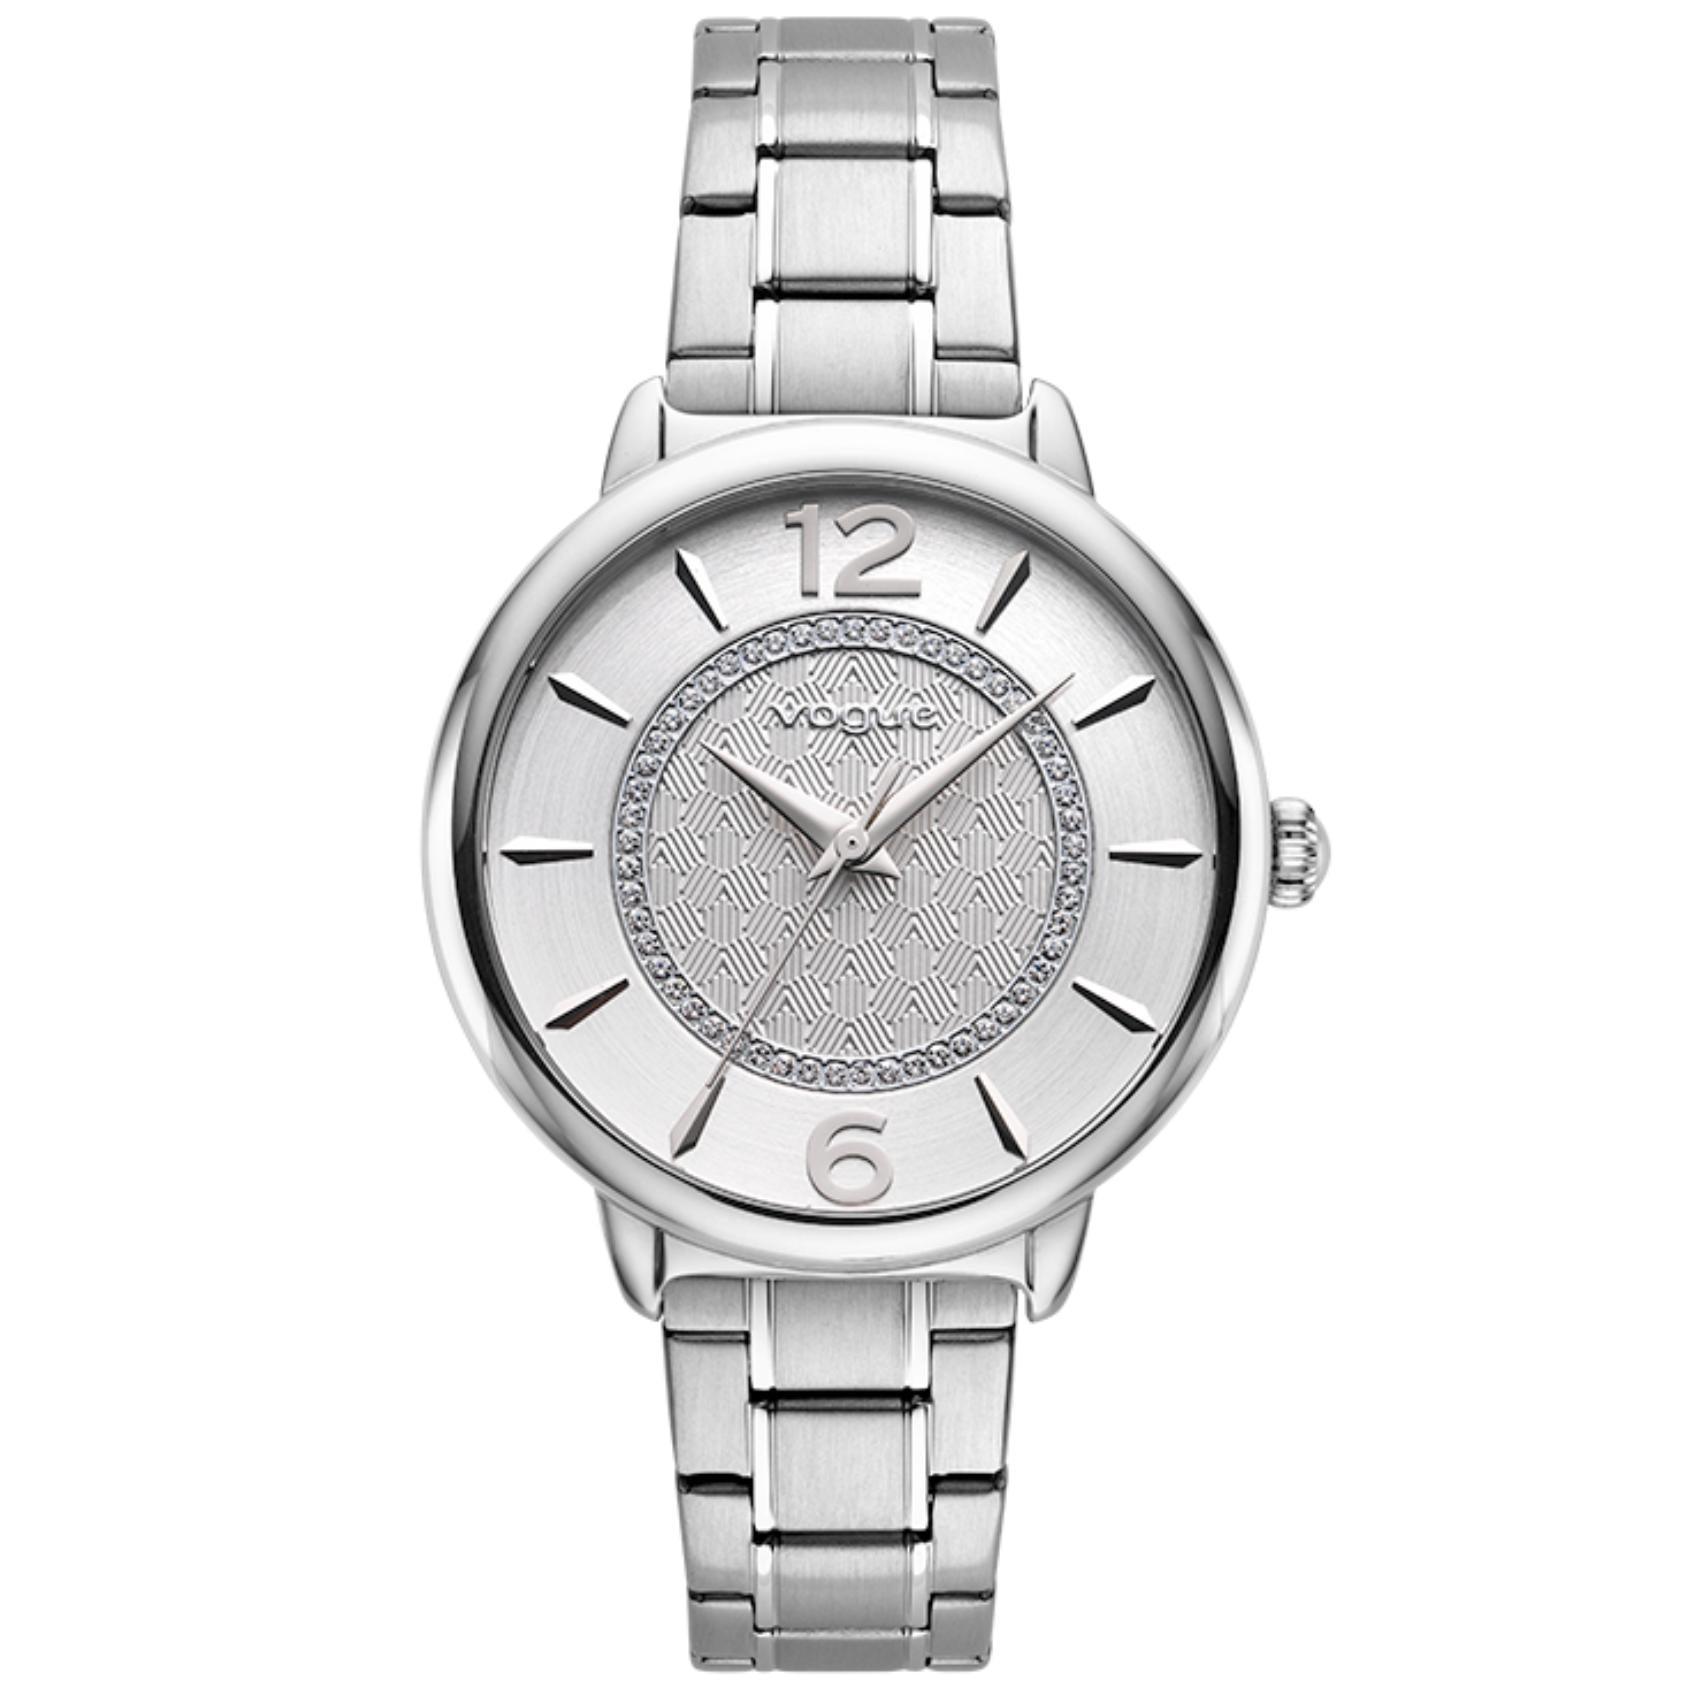 Γυναικείο ρολόι Vogue Lucy 2020612482 με ασημί ατσάλινο μπρασελέ και ασημί καντράν διαμέτρου 37mm με ζιργκόν.